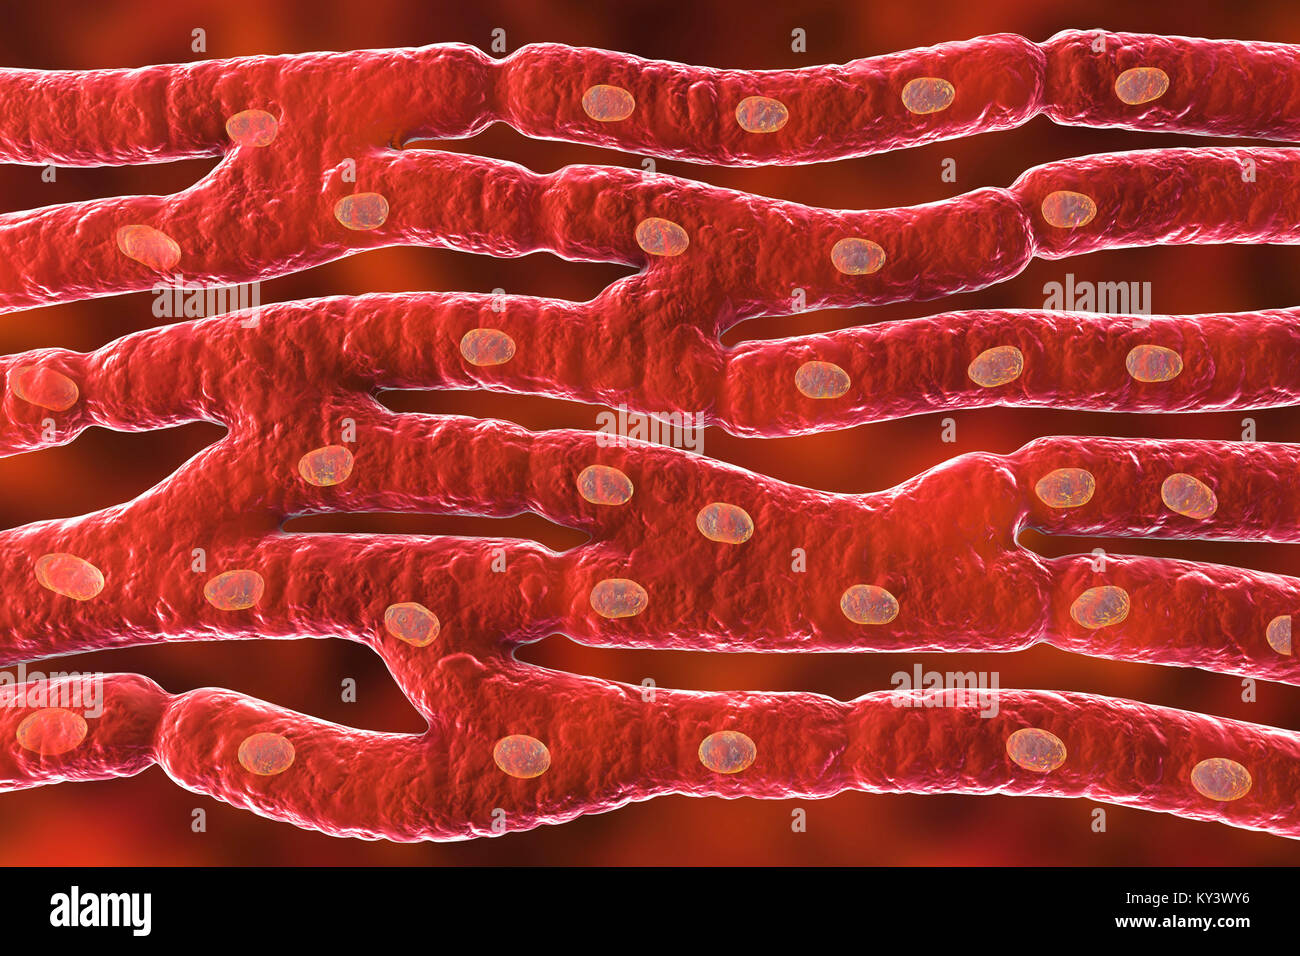 Estructura del músculo cardíaco, equipo de ilustración. El músculo cardíaco está formado por células fusiformes agrupadas en paquetes irregulares. Los límites entre las células individuales son débilmente visible aquí. Cada celda contiene un núcleo, visibles como manchas de color oscuro. El músculo cardíaco es un tejido muscular especializado que pueden contraerse de forma regular y continua, sin cansancio. Foto de stock